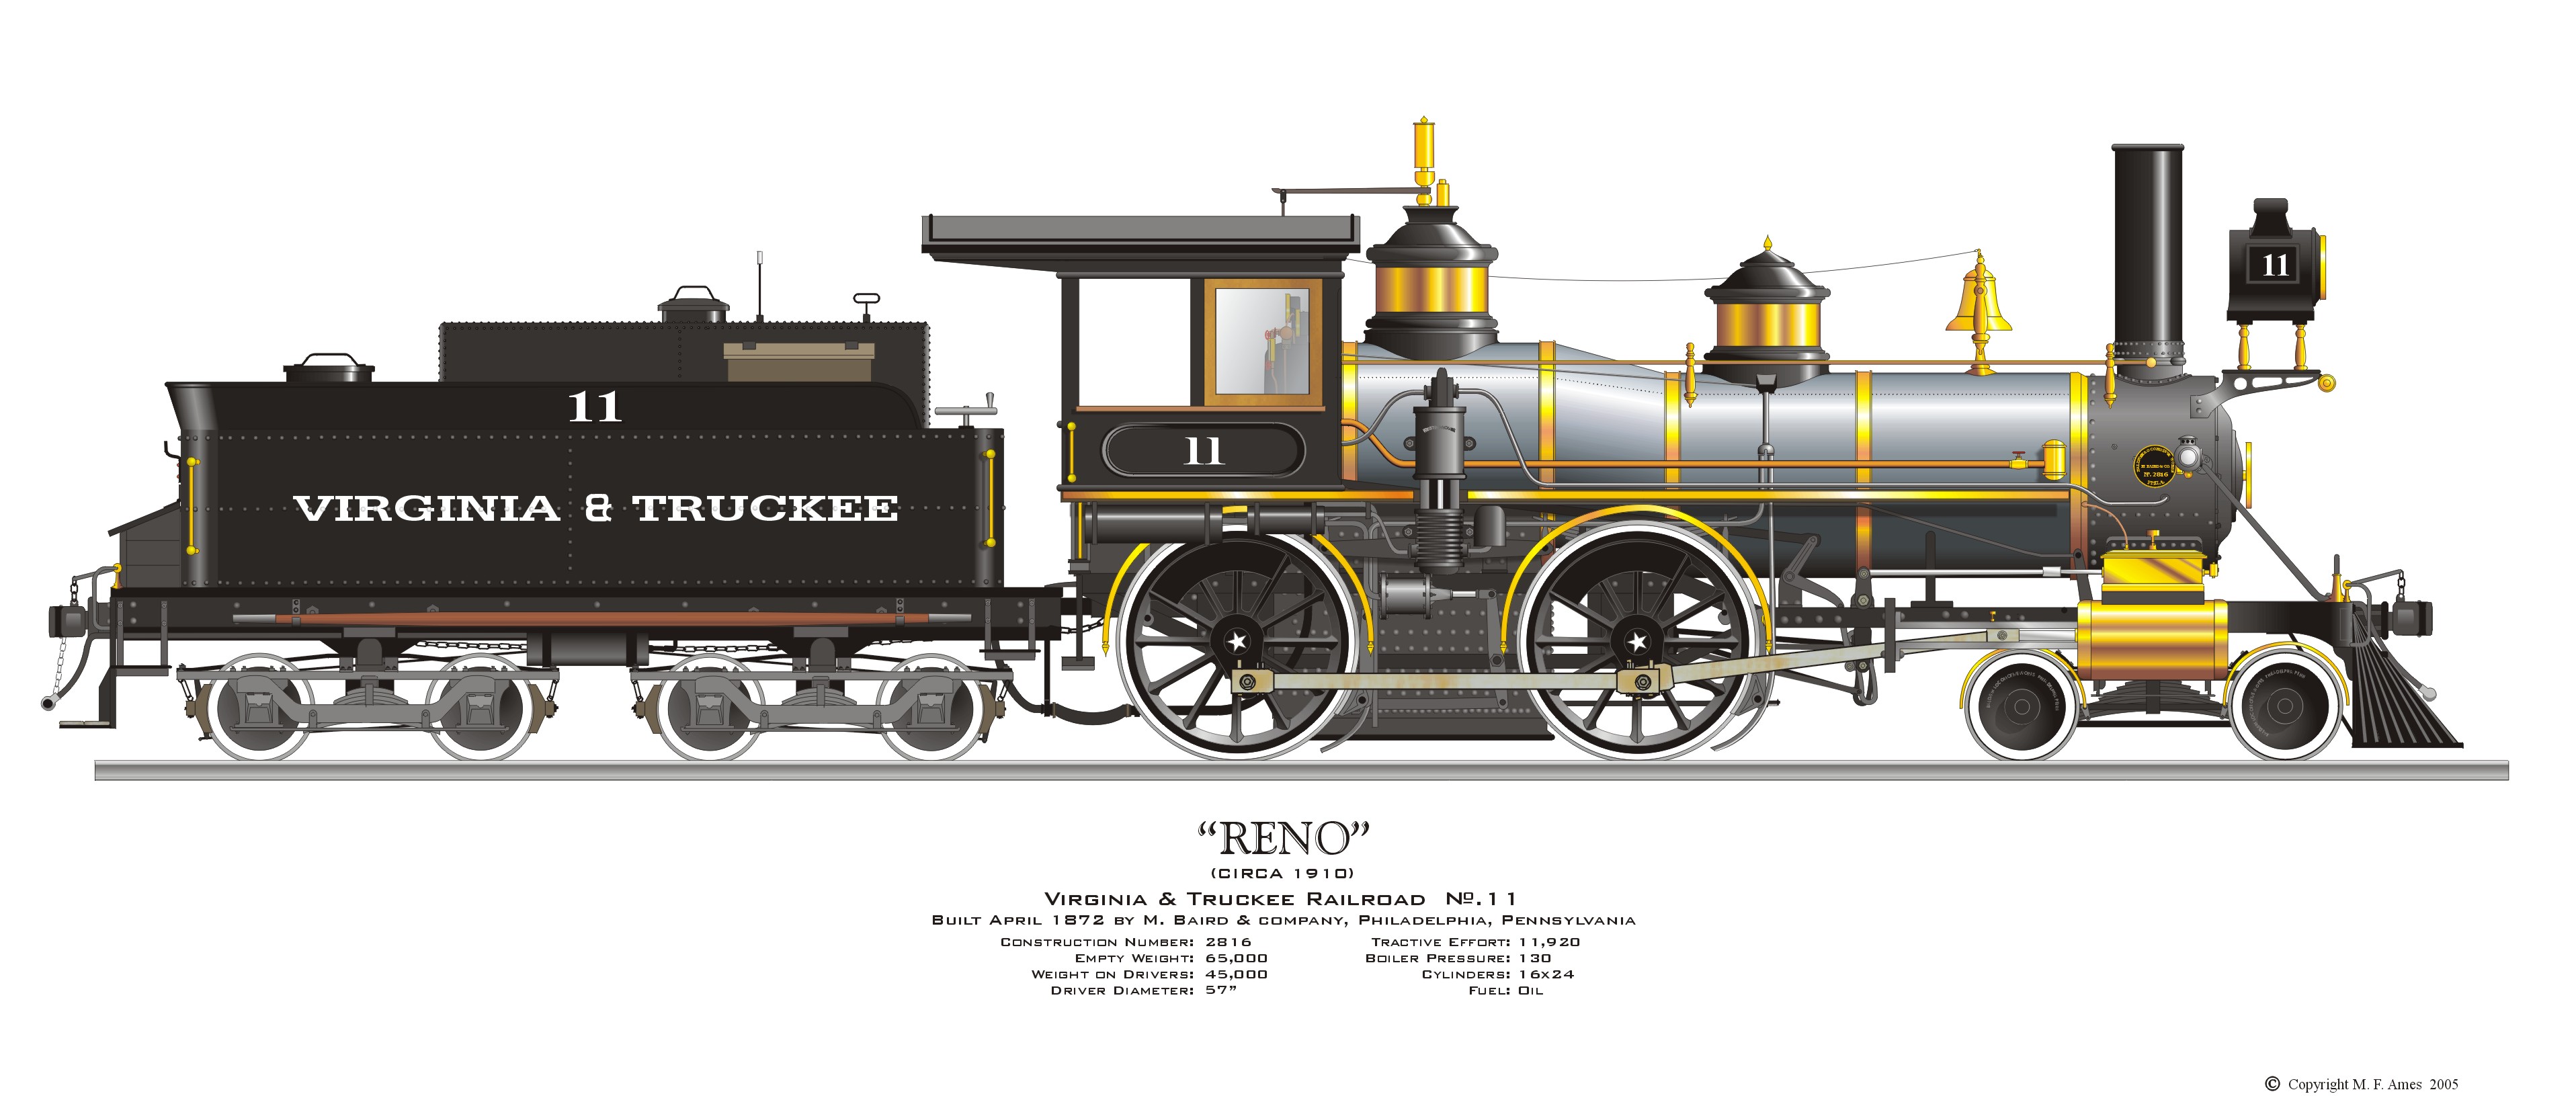 Virginia & Truckee, Locomotive #11, Reno